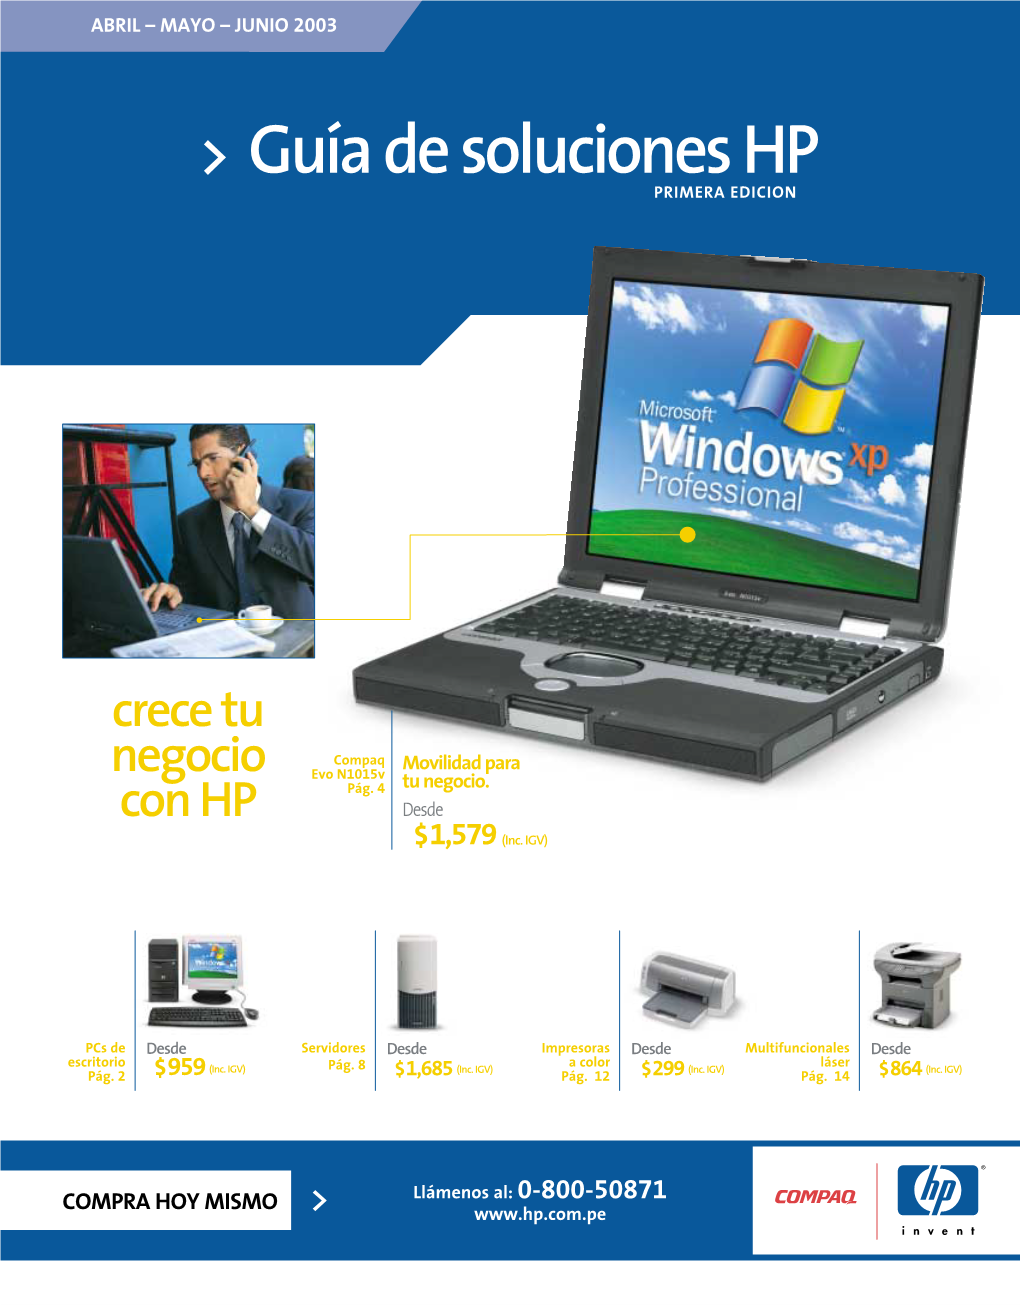 Guía De Soluciones HP PRIMERA EDICION